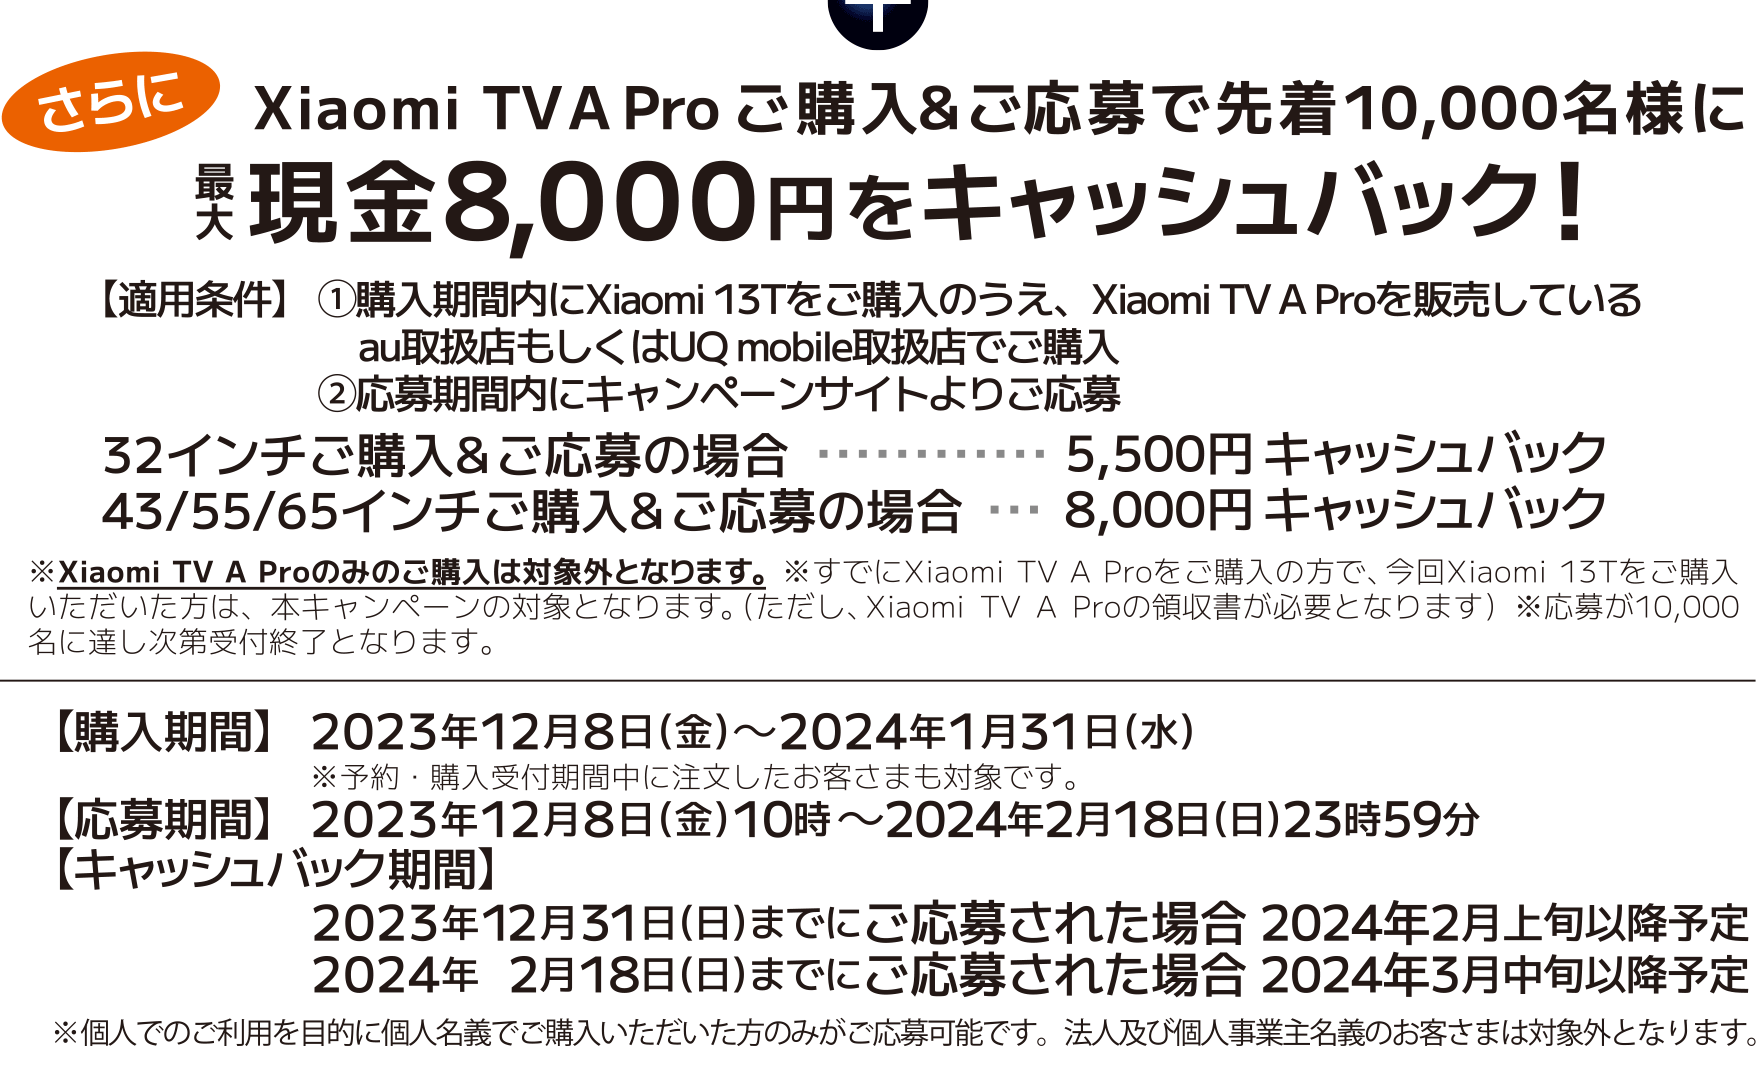 さらに Xiaomi TV A Proご購入&ご応募で先着10,000名様に最大現金8,000円をキャッシュバック！